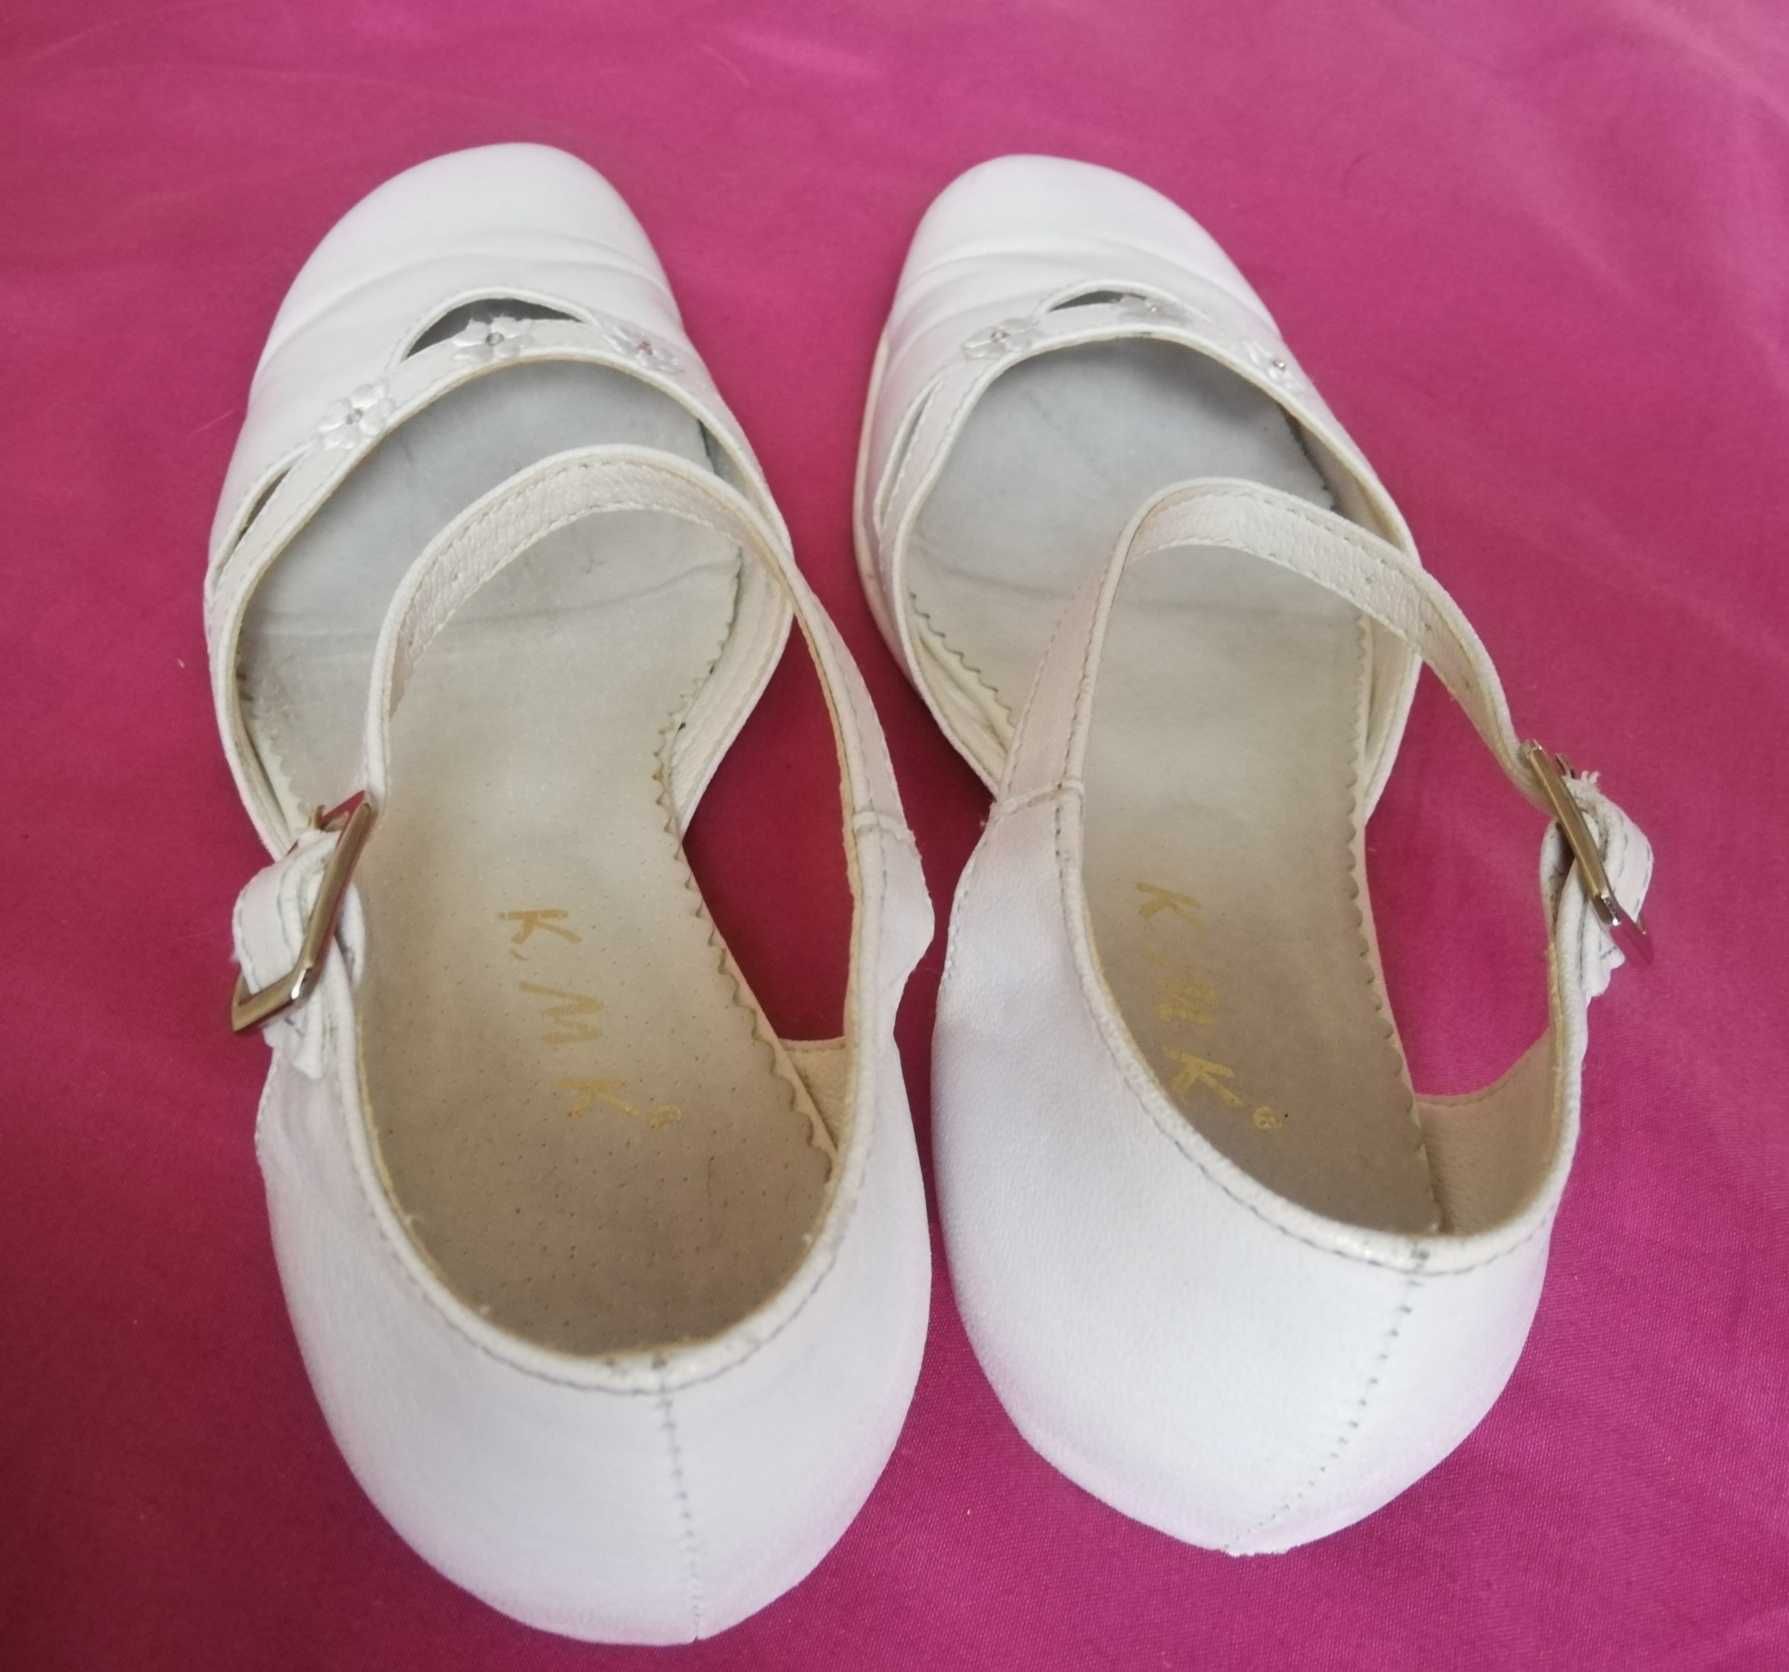 Buty pantofelki wizytowe komunijne ślubne białe na małym obcasie 36